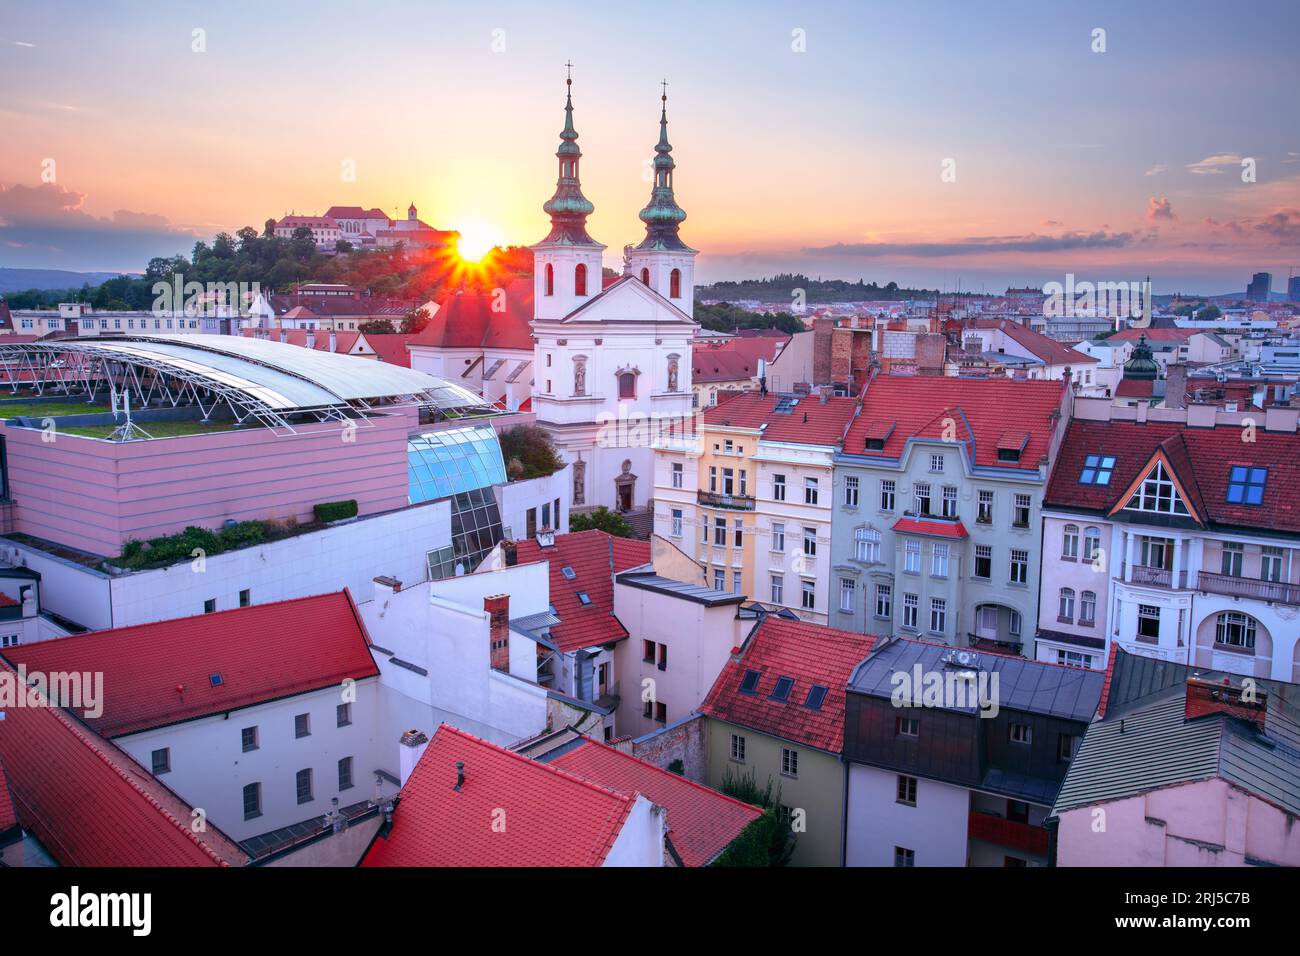 Brno, Repubblica Ceca. Immagine aerea del paesaggio urbano di Brno, la seconda città più grande della Repubblica Ceca al tramonto estivo. Foto Stock